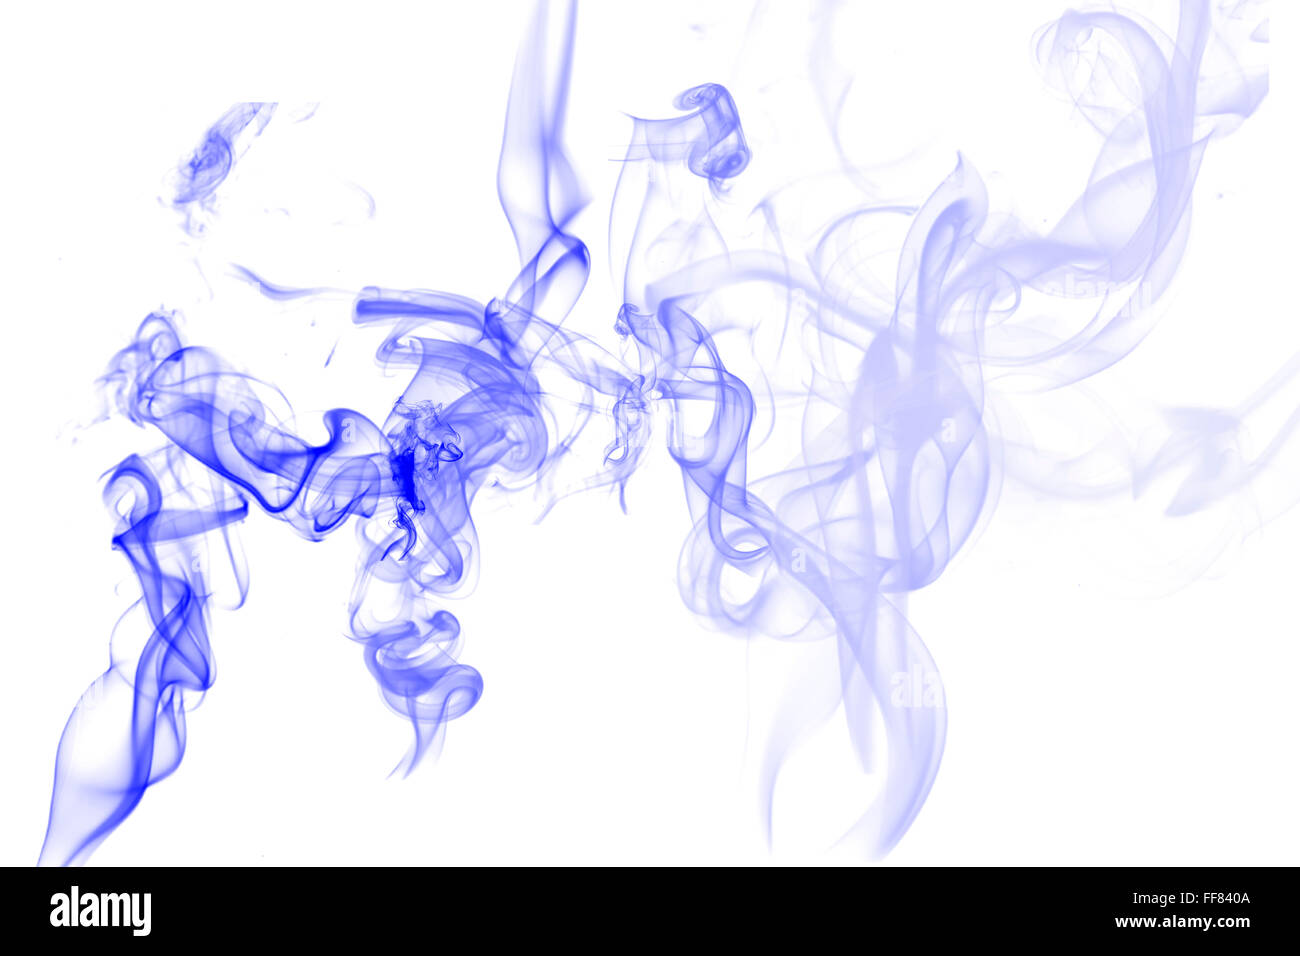 Resumen gráfico de humo sobre fondo blanco. Foto de stock